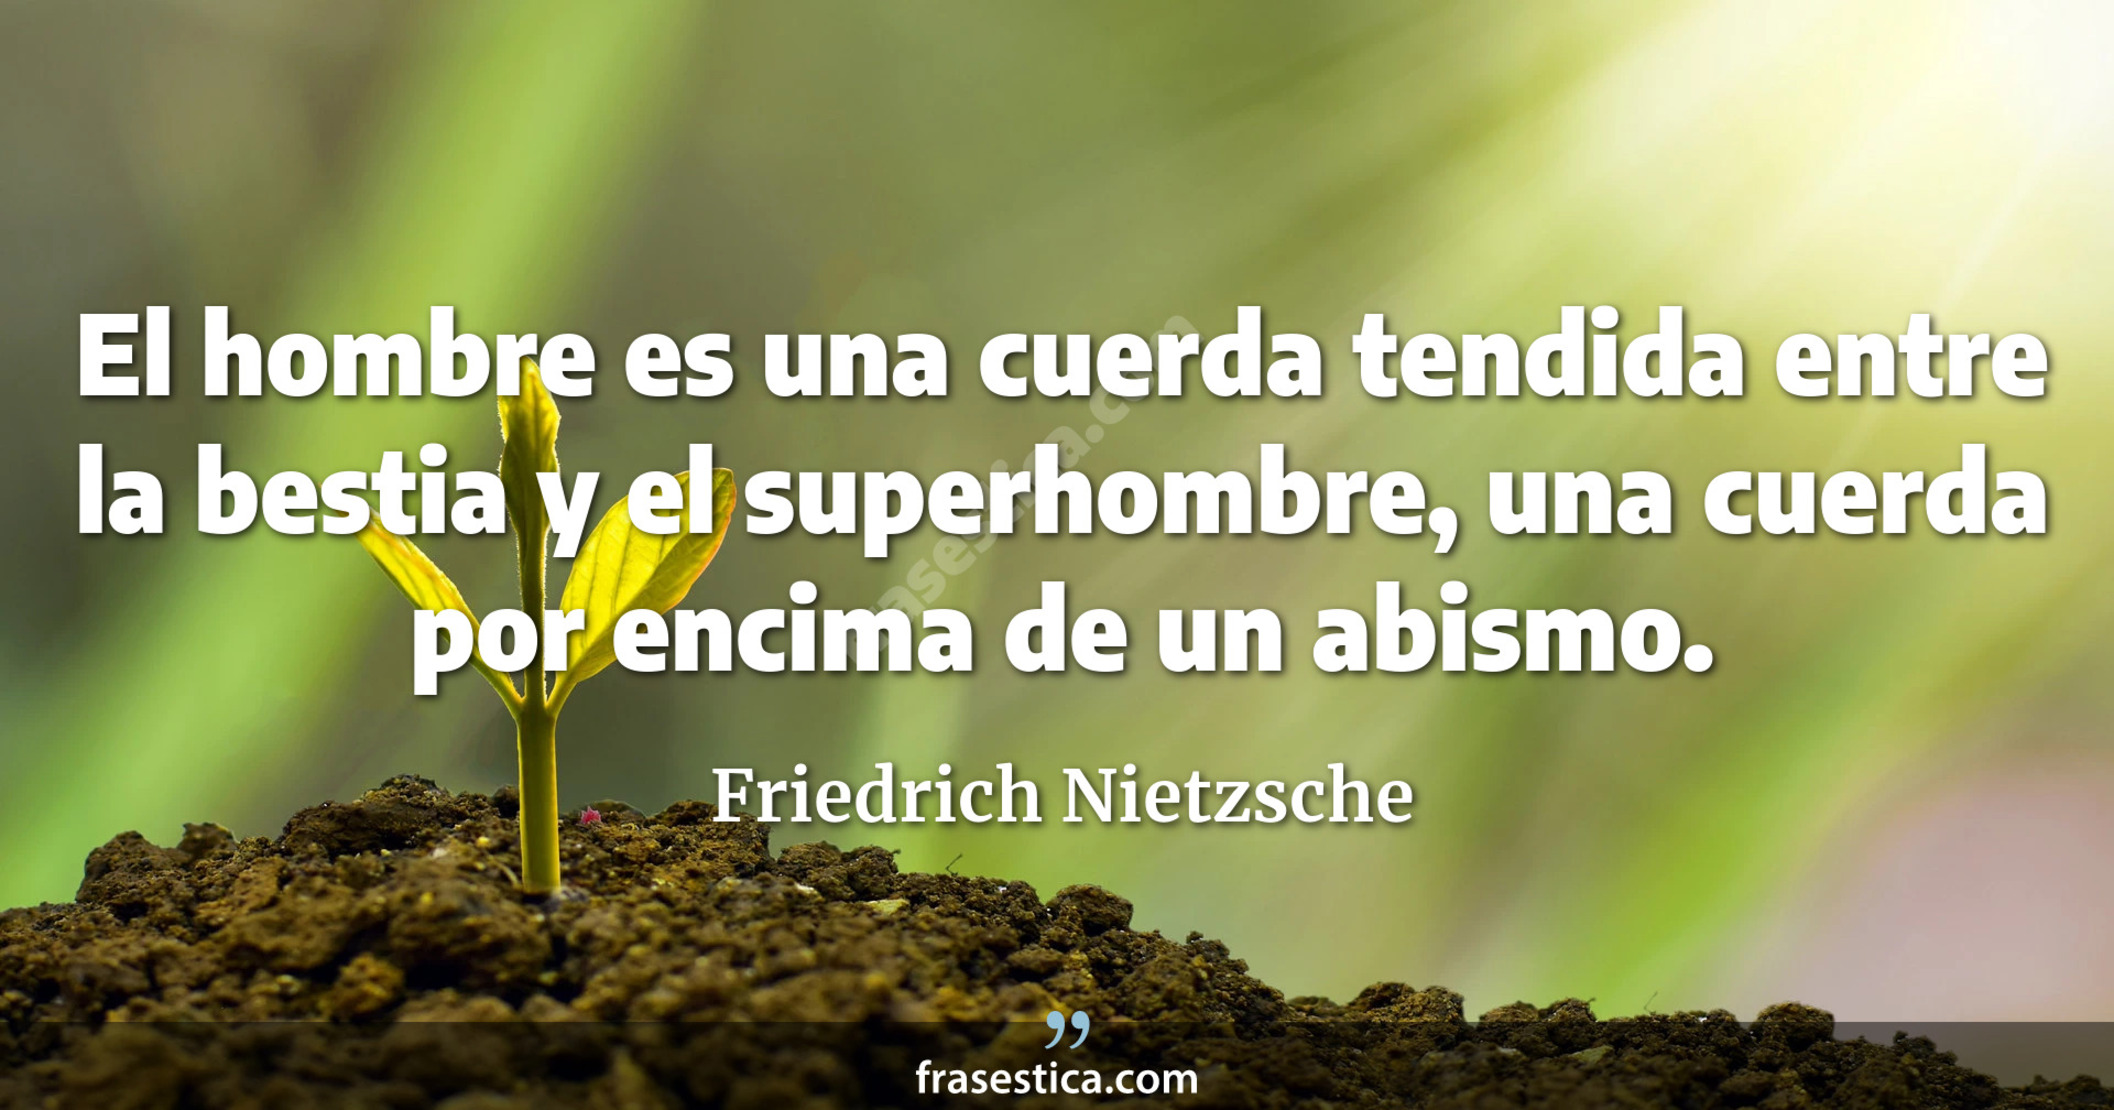 El hombre es una cuerda tendida entre la bestia y el superhombre, una cuerda por encima de un abismo. - Friedrich Nietzsche